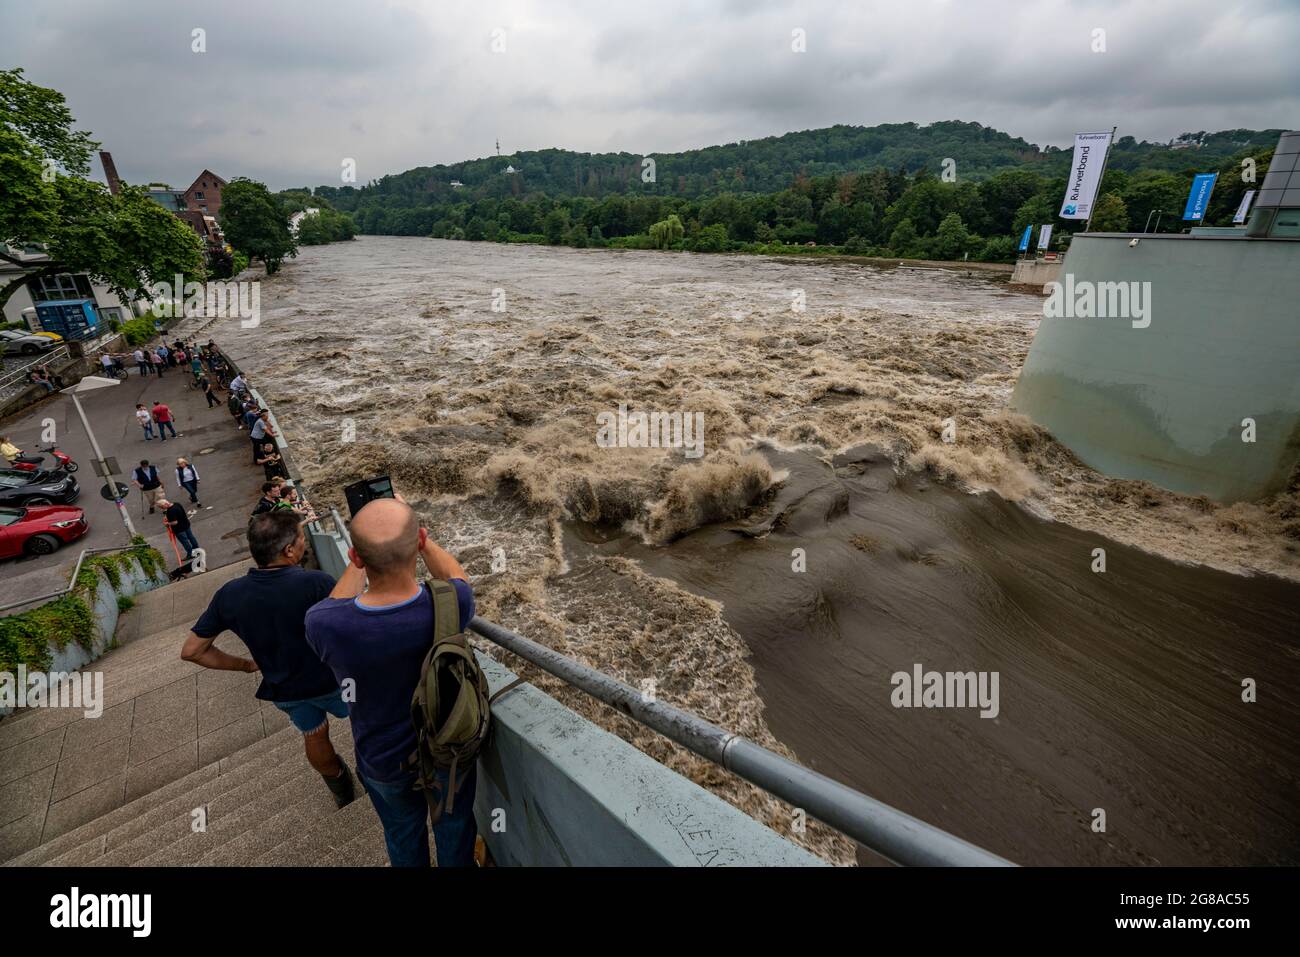 Wehr des Baldeneysee in Essen, die Wassermassen brüllen durch die offenen Wehre, Hochwasser an der Ruhr, nach langen heftigen Regenfällen kam der Fluss aus mir heraus Stockfoto